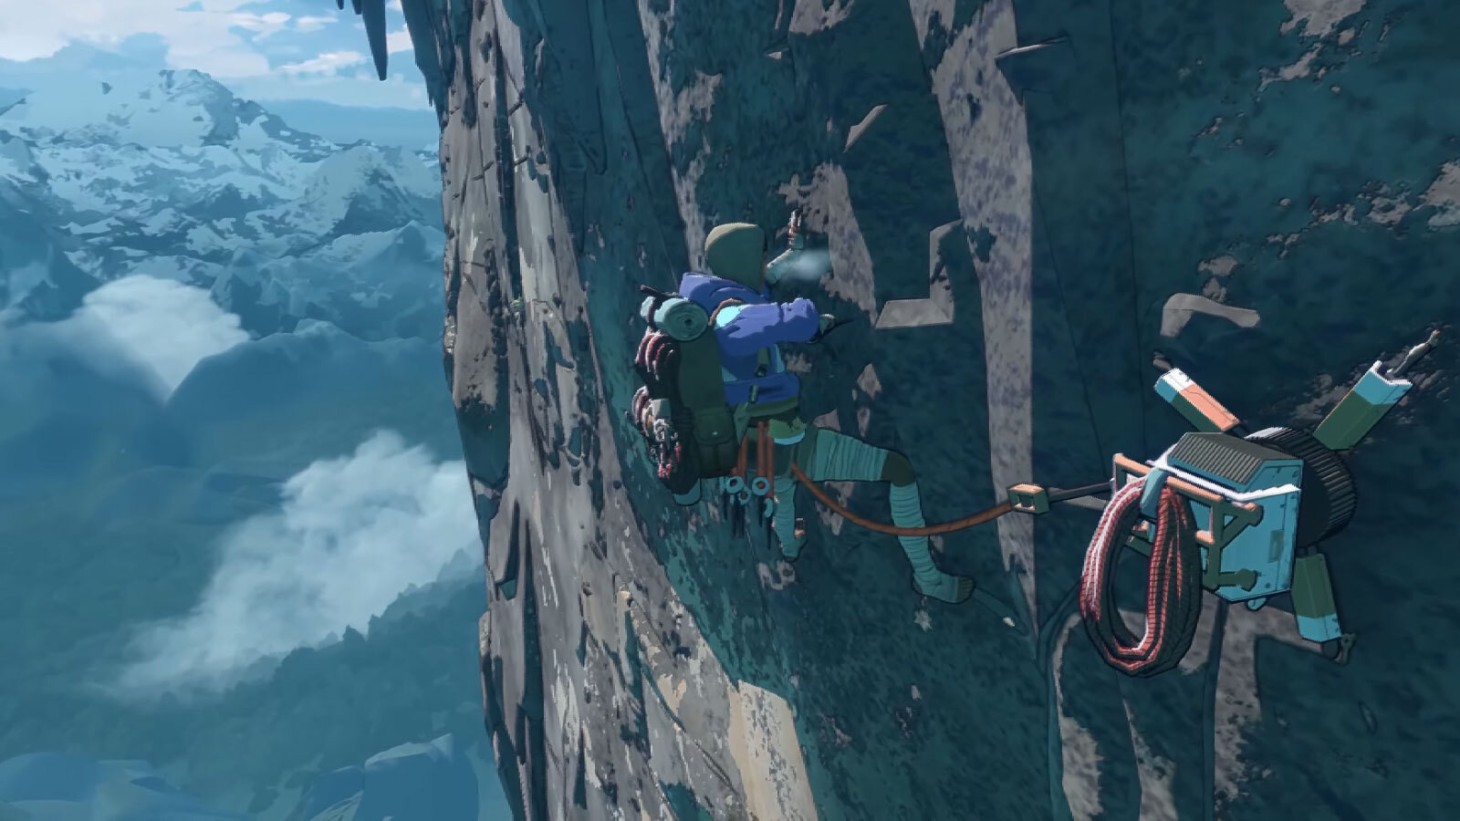 Cairn ist ein neues Kletter-Abenteuer-Survival-Spiel von den Entwicklern von Haven